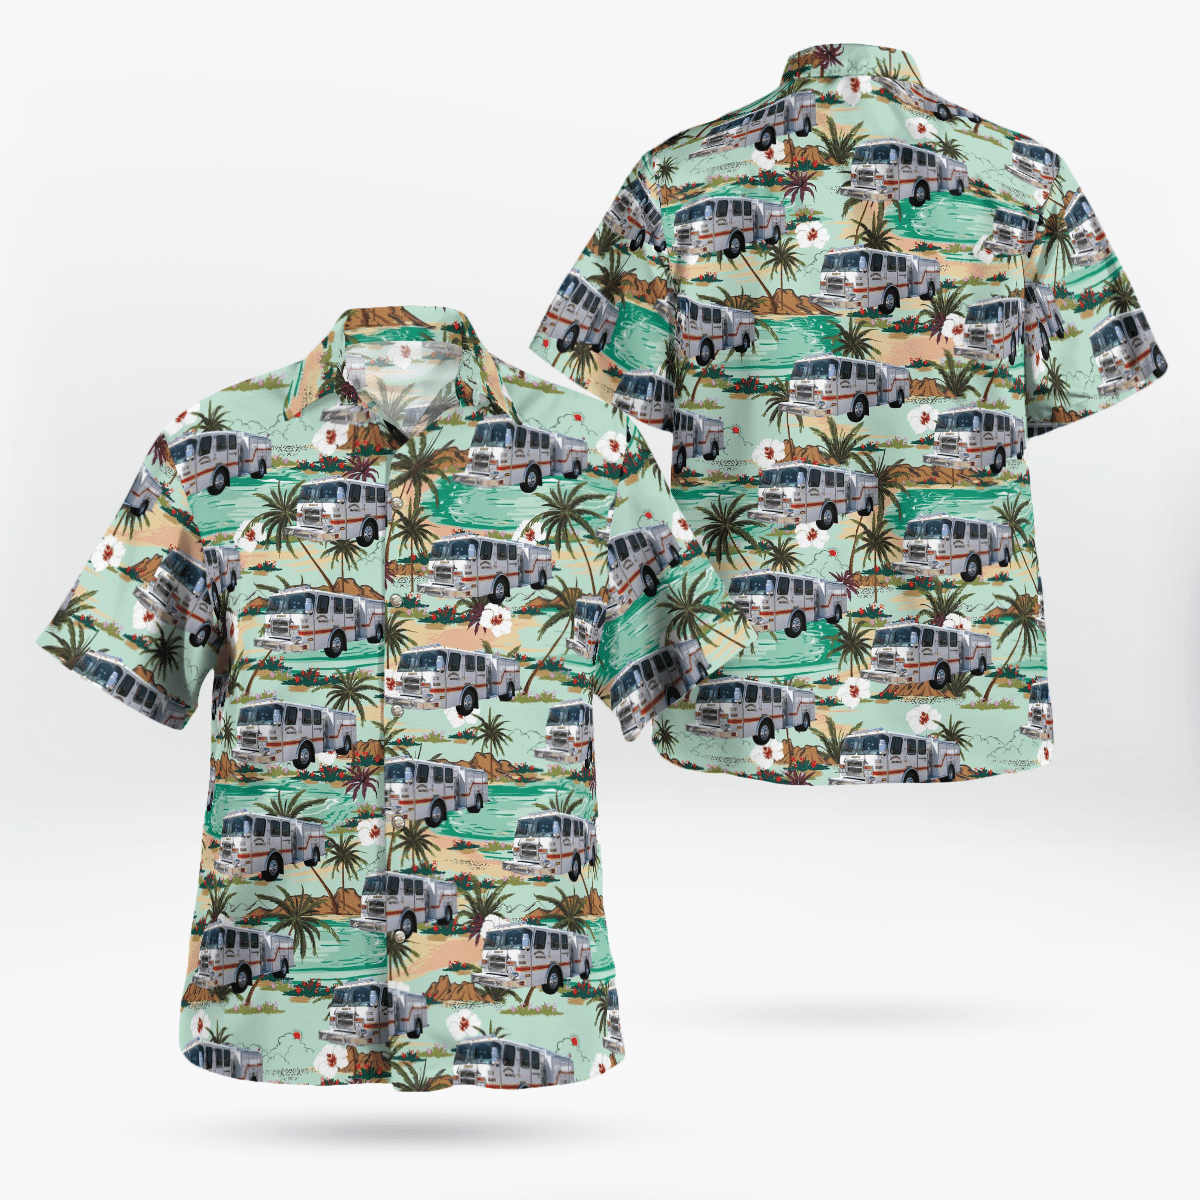 You won't regret buying these Aloha Shirt 222